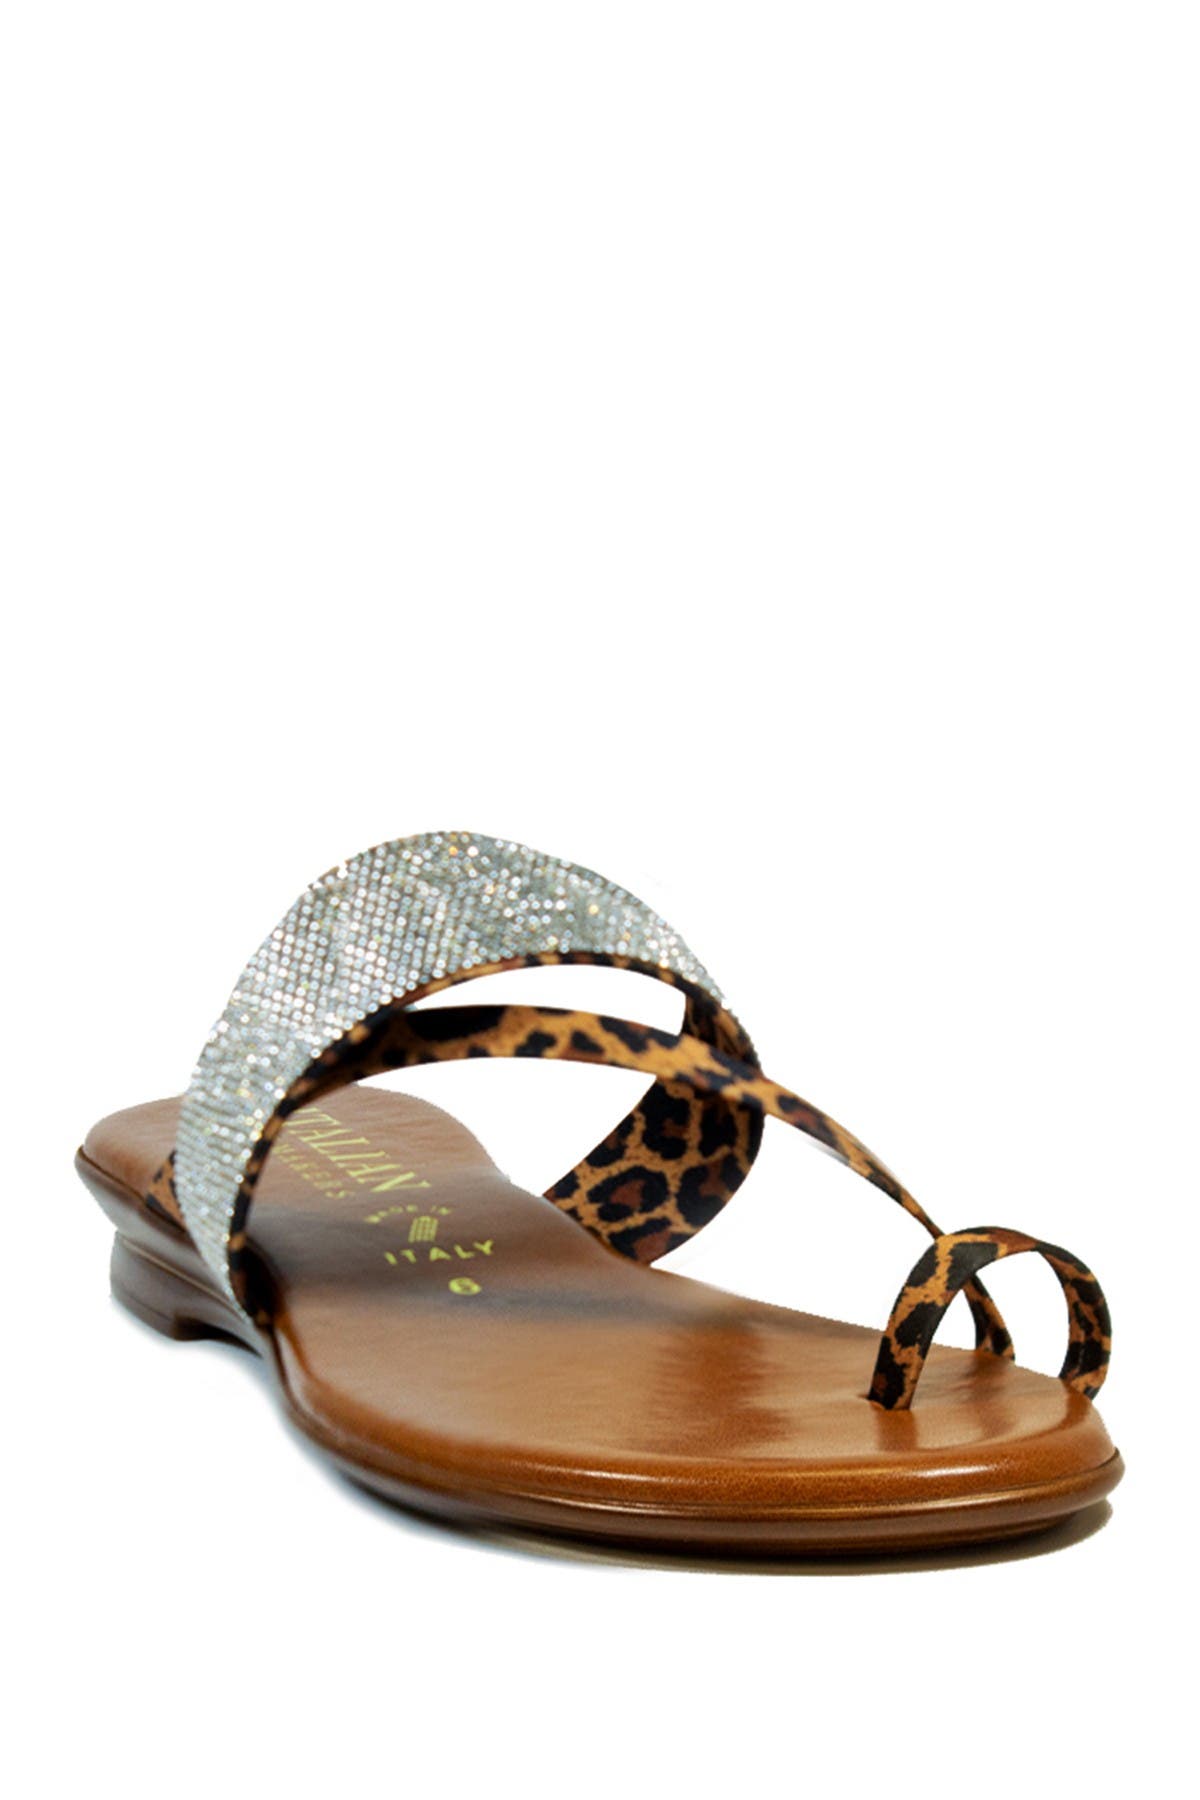 Italian Shoemakers Ryann Strappy Sandal In Leopard